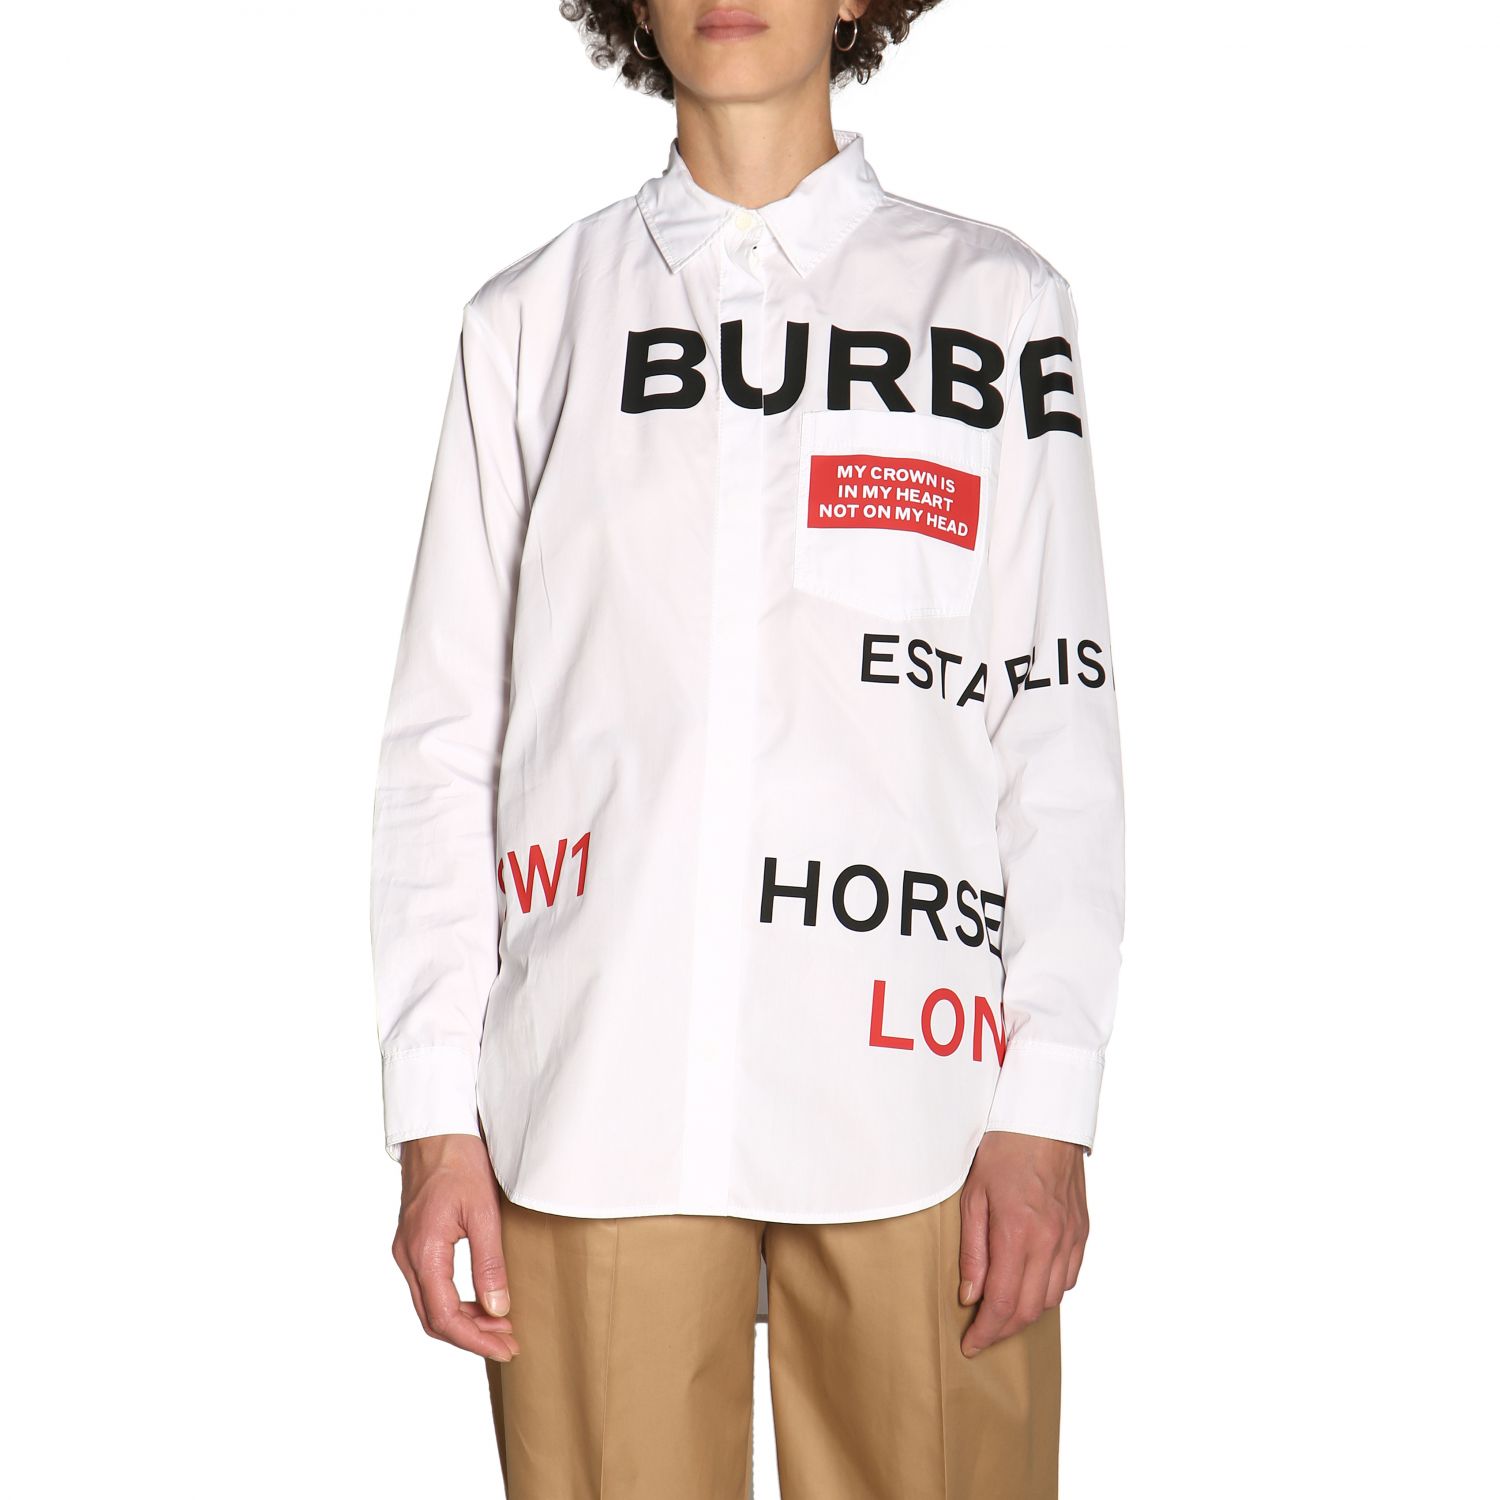 burberry white shirt womens